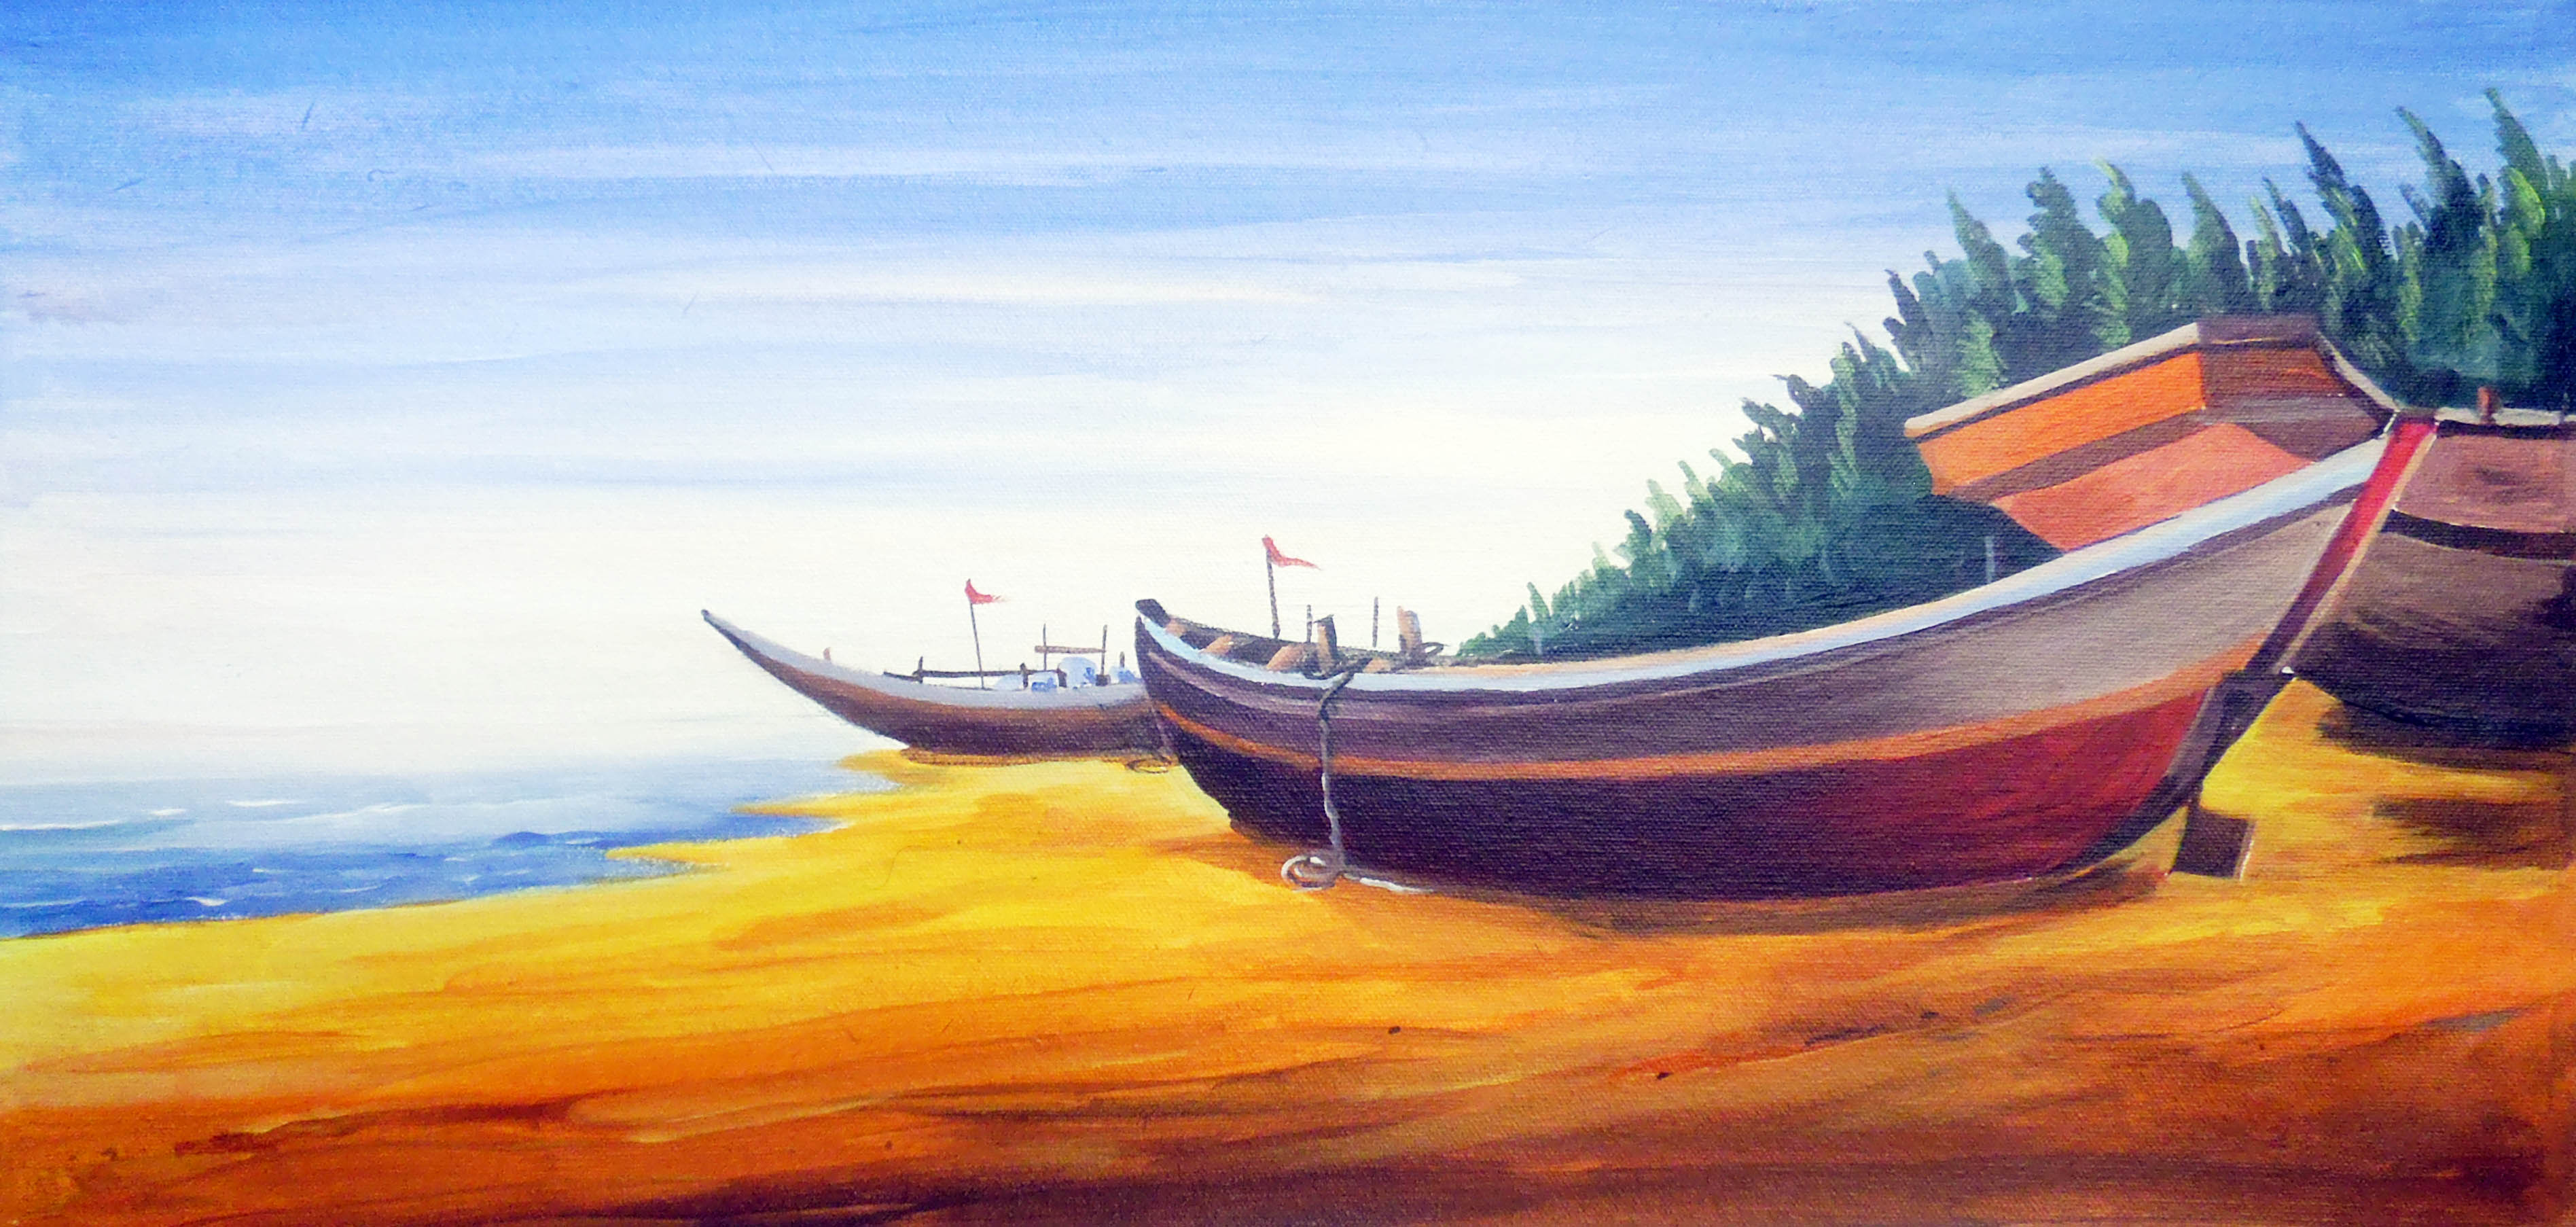 Buy Painting Fishing Boats At Morning Seashore Artwork No 7753 by ...